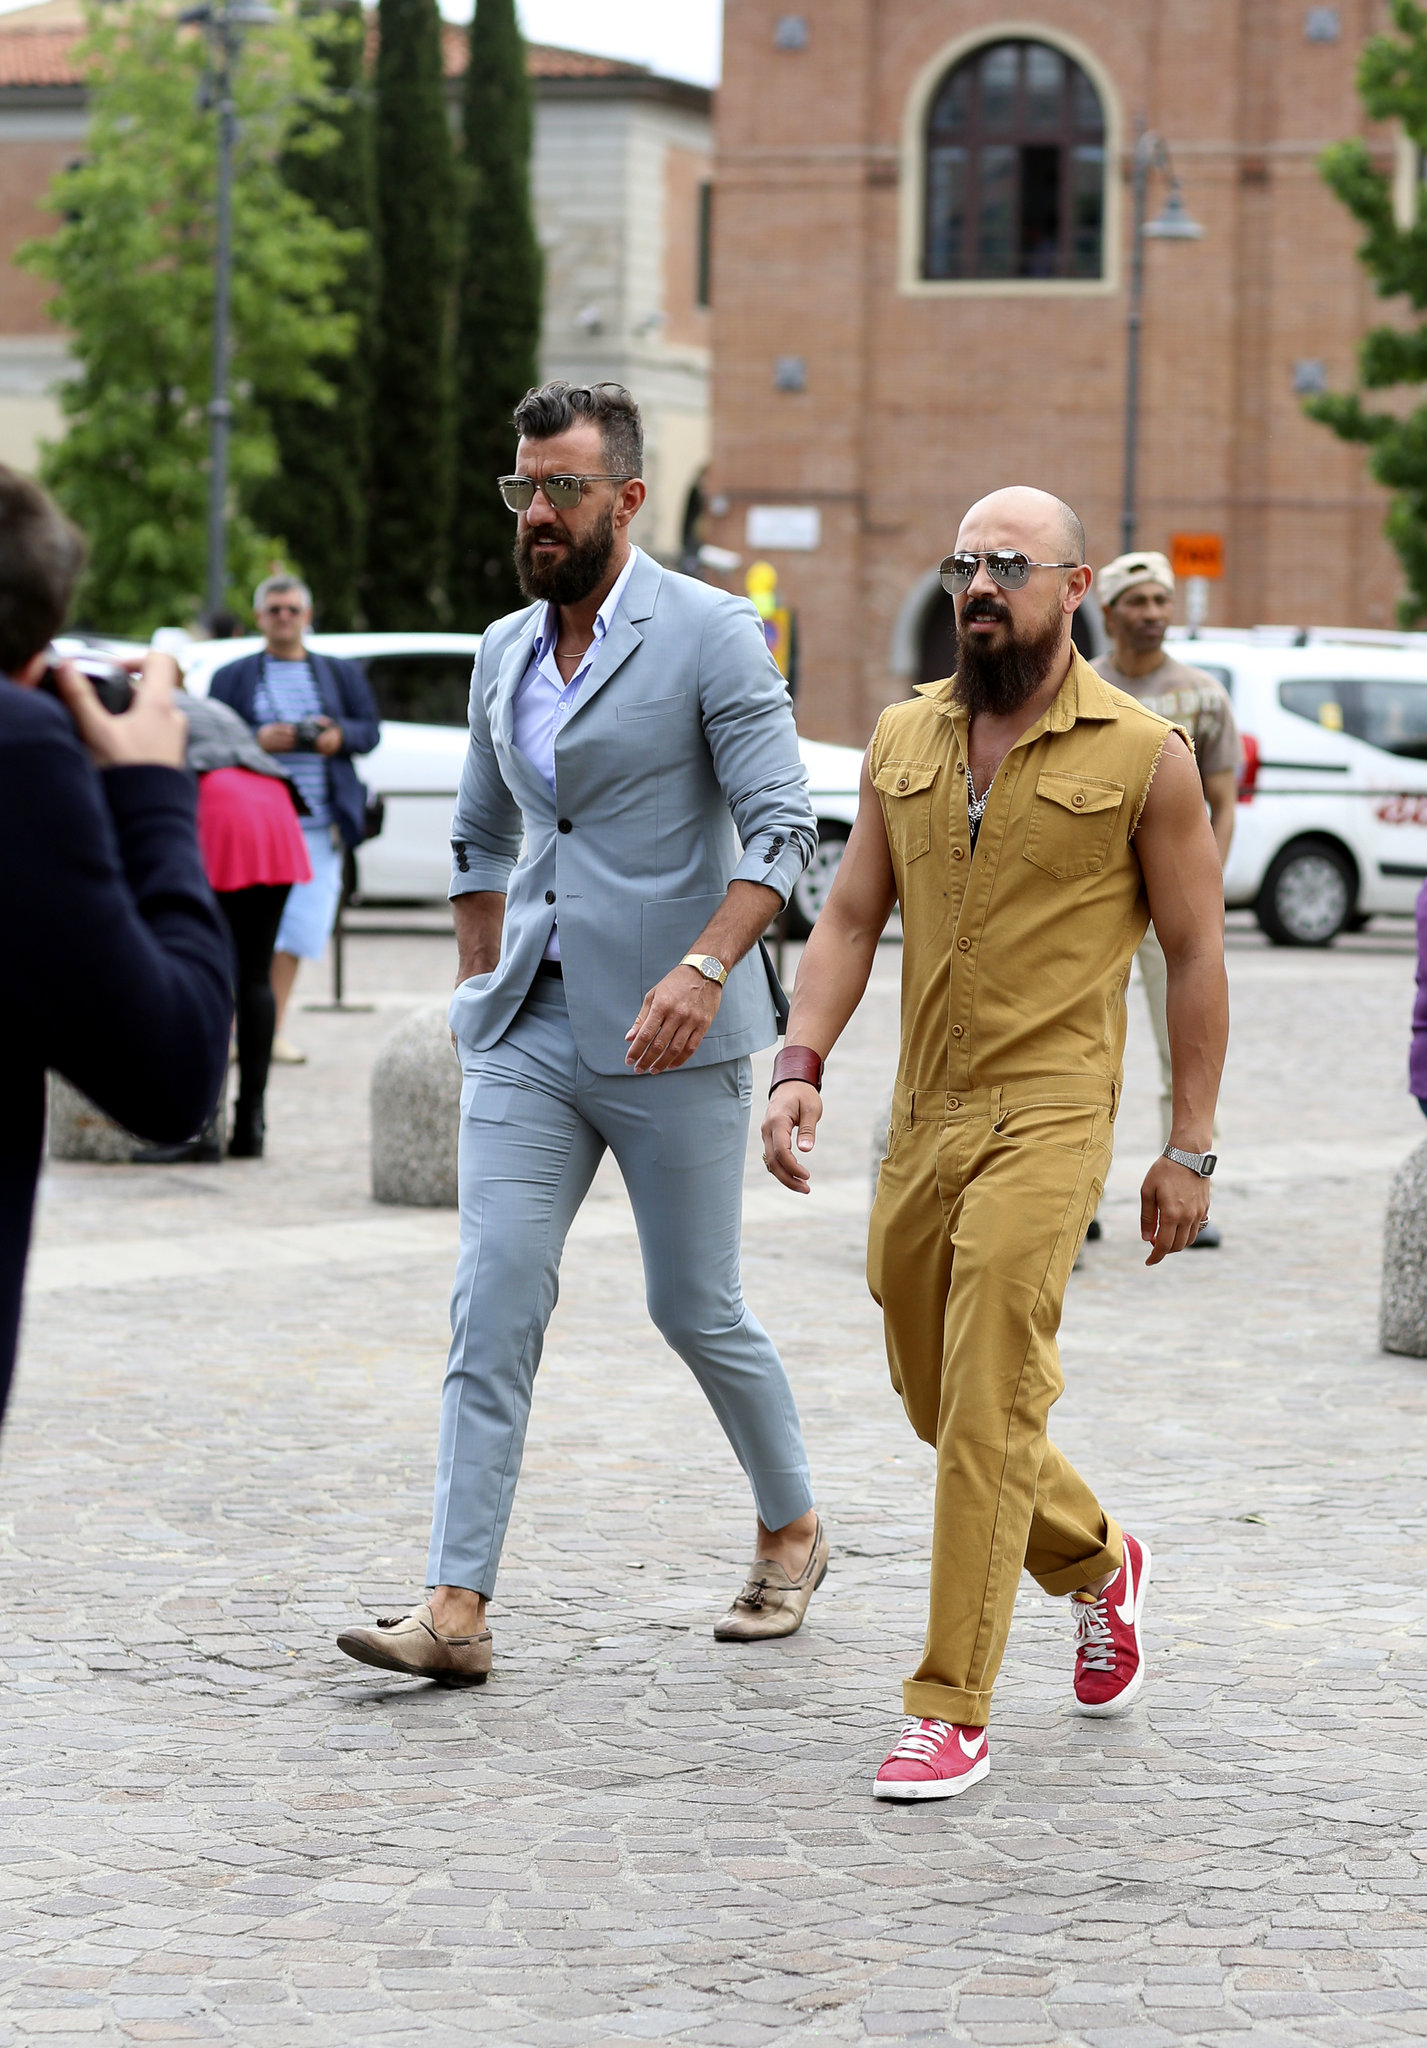 Pitti Uomo - Fashion Event For Men In Italy - fashionsy.com